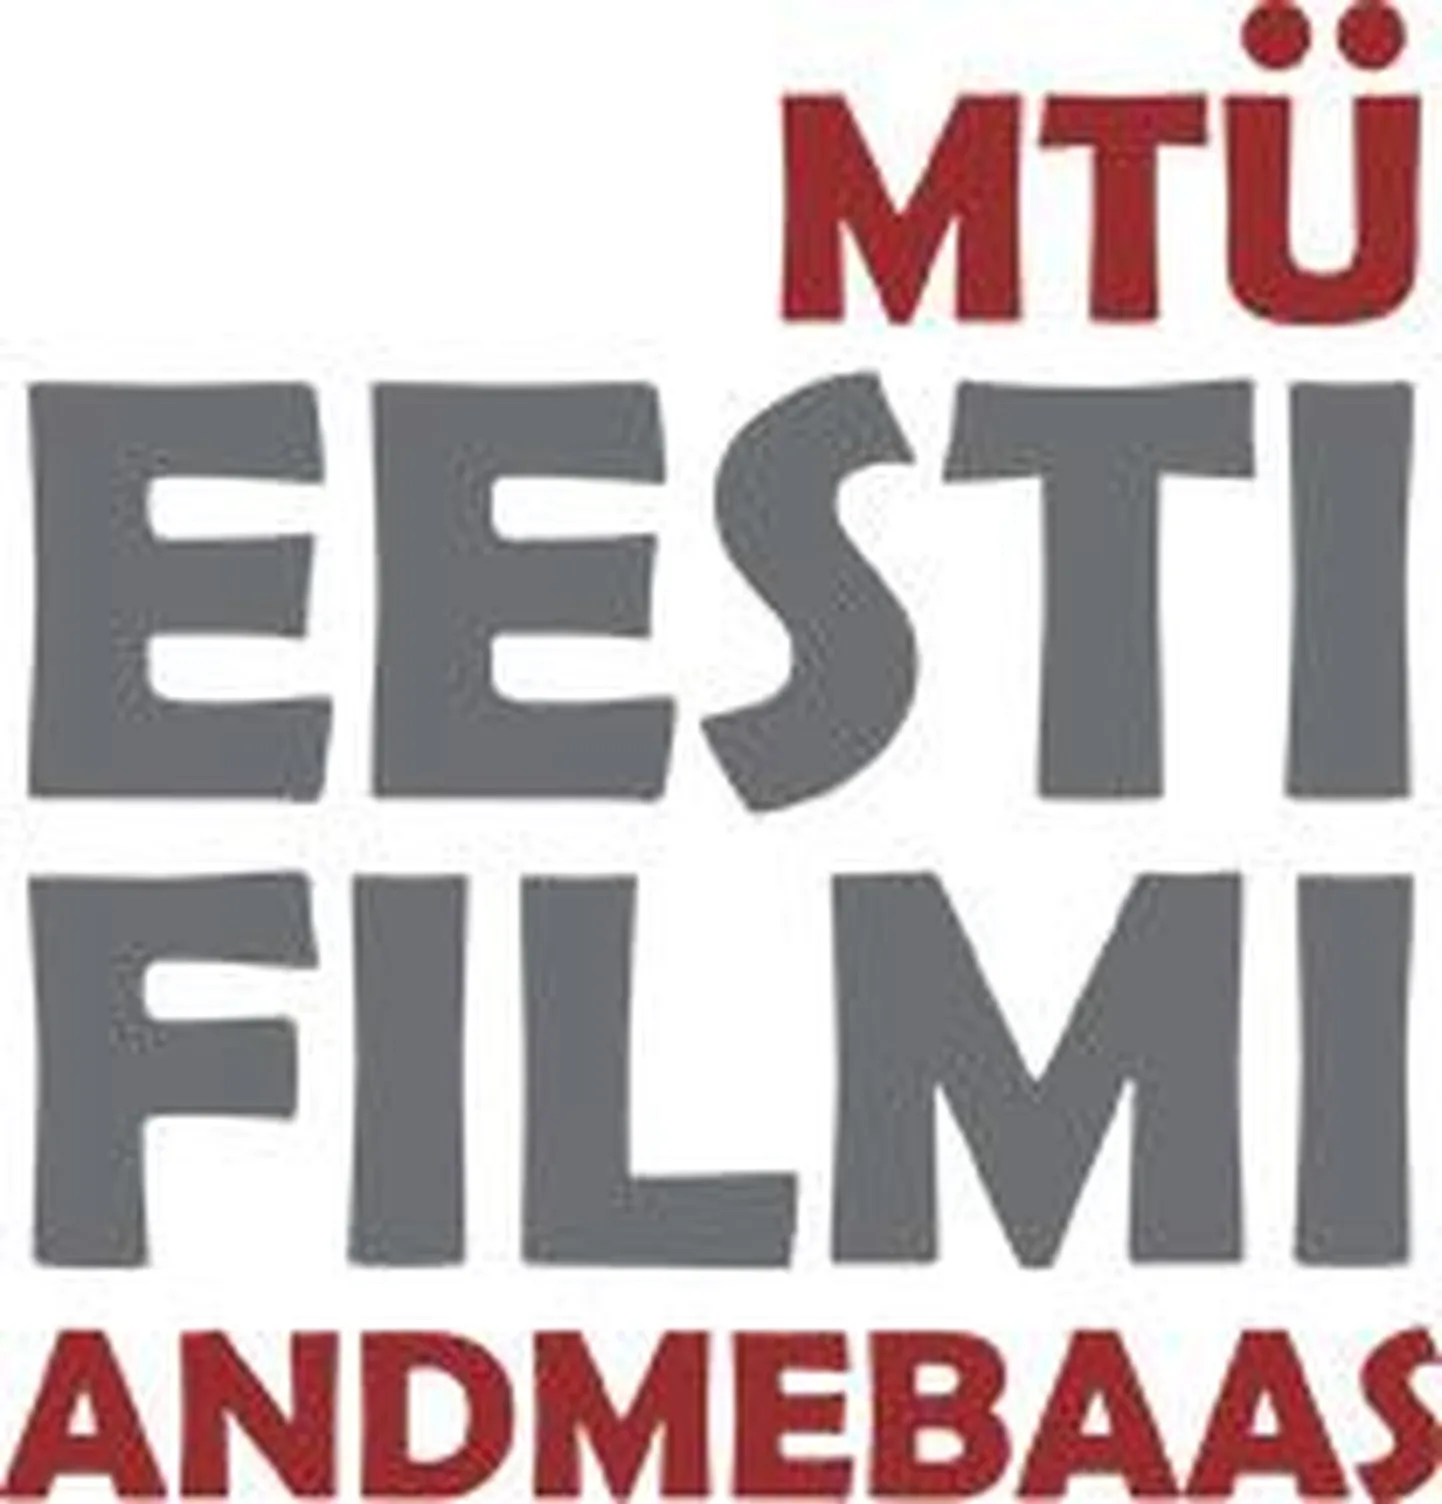 Eesti Filmi Andmebaas